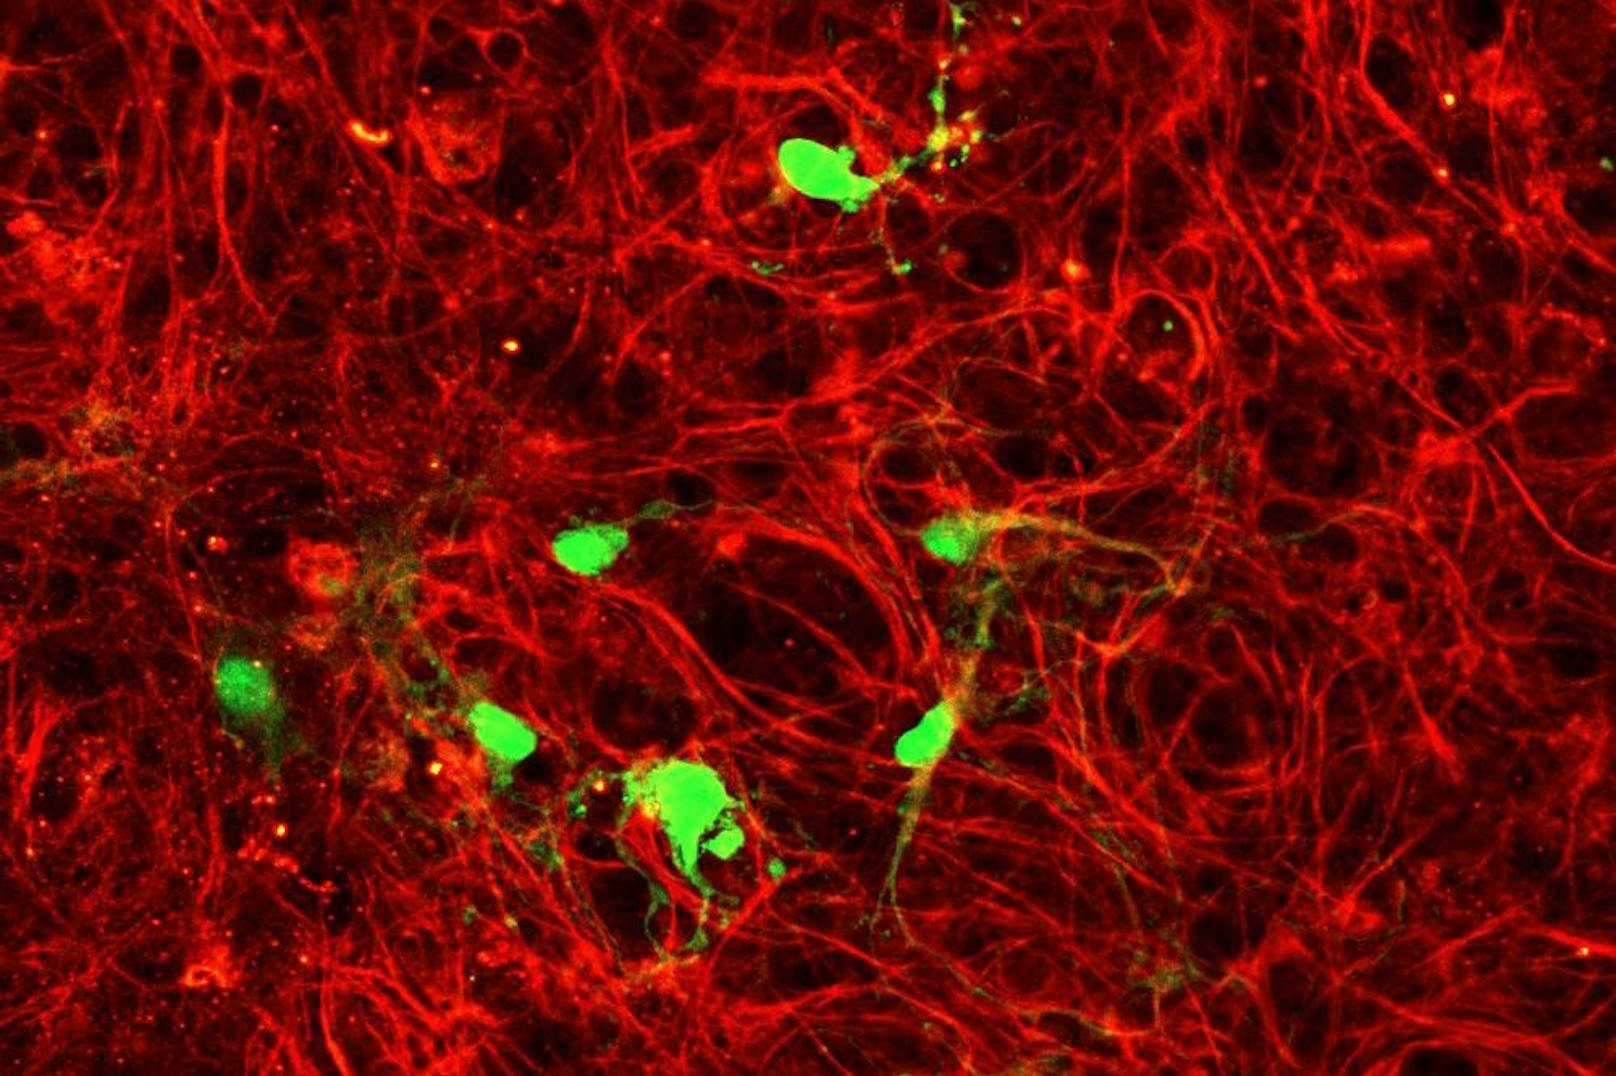 Immunzellen, die mit einem Typ von Adeno-assoziiertem Virus (AAV9) infiziert sind. Das Virus trägt genetisches Material, das die infizierten Mikroglia-Immunzellen im Gehirn dazu bringt, ein grün fluoreszierendes Protein zu produzieren. Der rote Farbstoff zeigt Mikrotubuli an, die Teil des Zellskeletts sind.